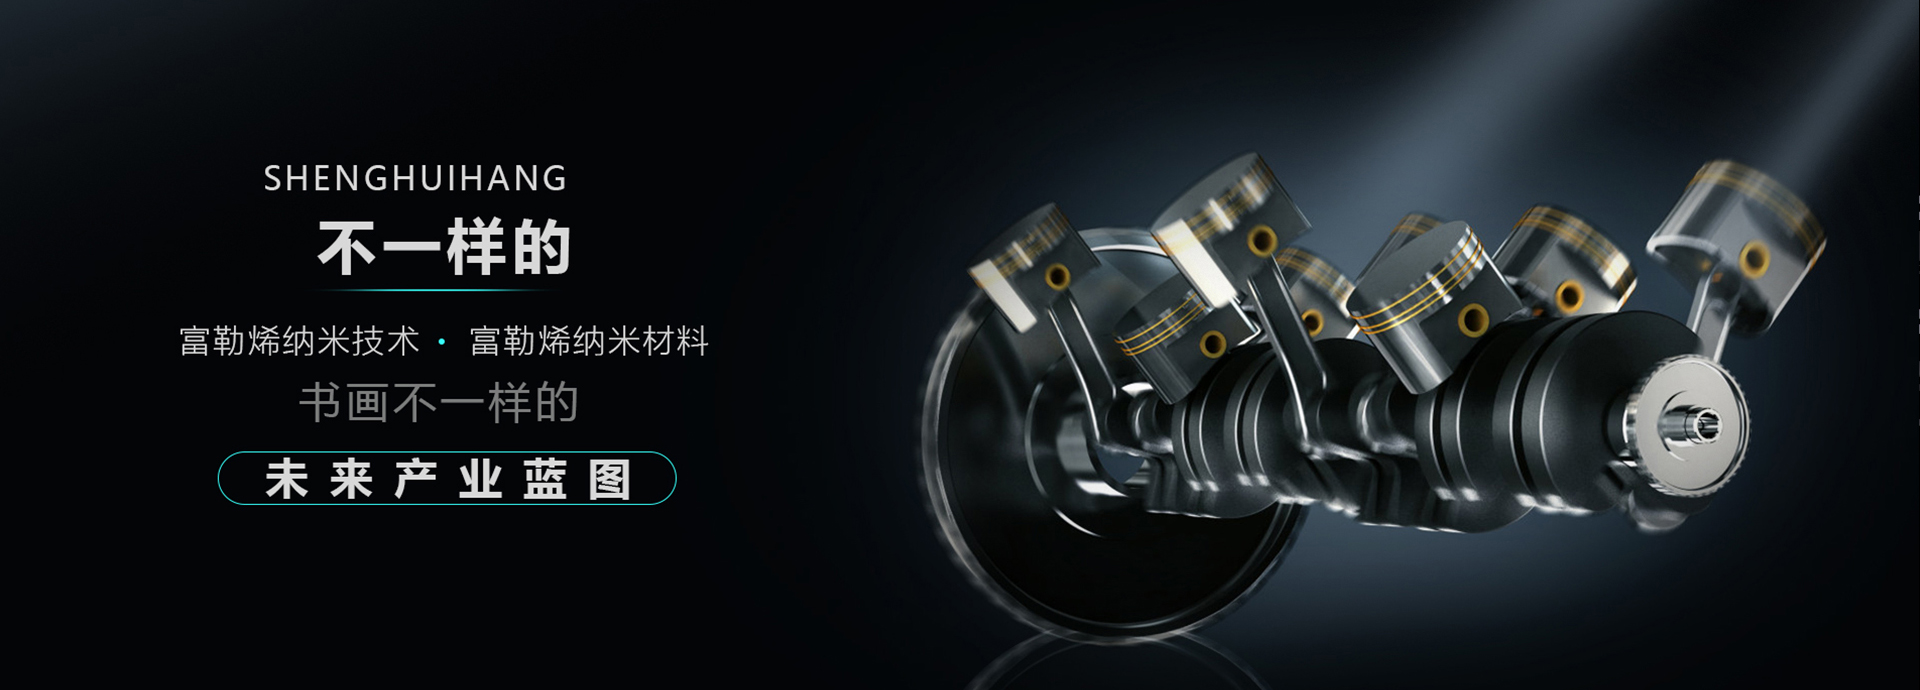 压力传感器,振动台,太阳成集团tyc7111cc(中国)有限公司